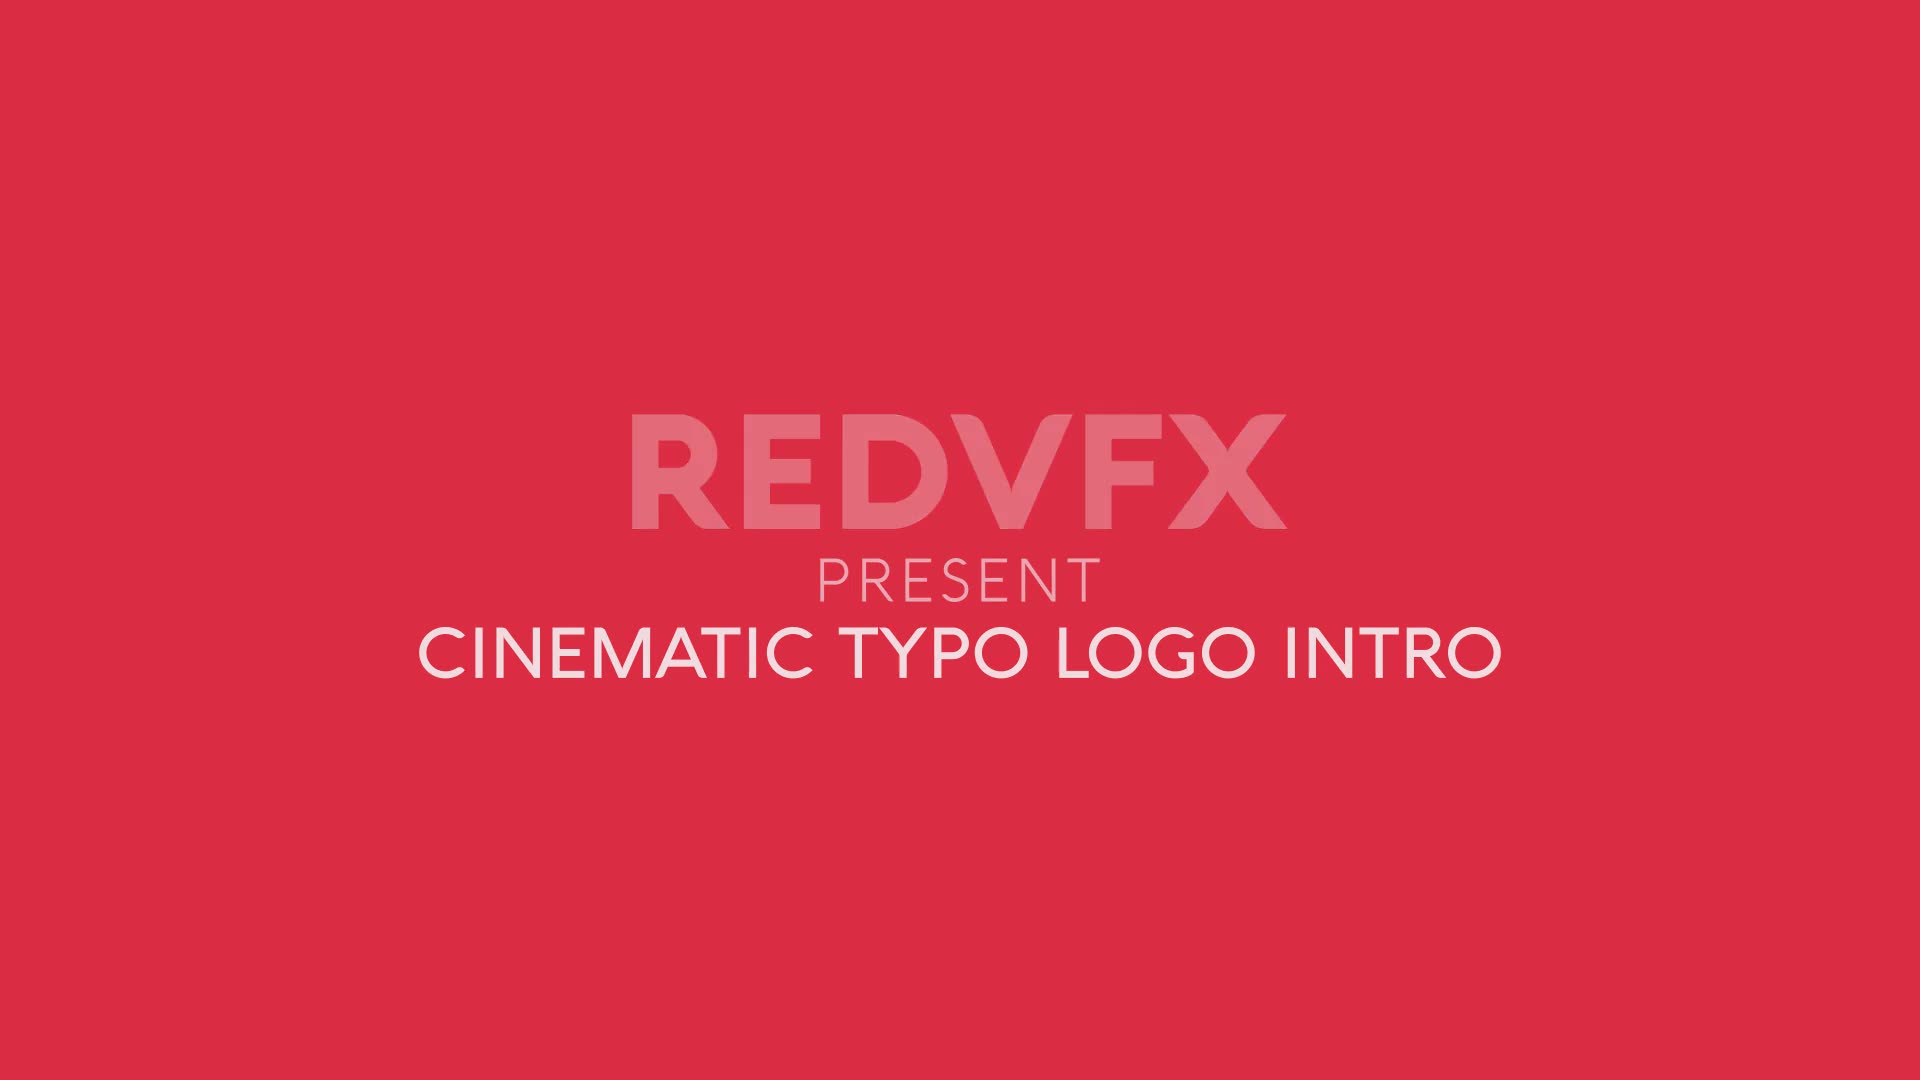 Cinematic Typo Logo for Premiere Pro Videohive 36487427 Premiere Pro Image 2